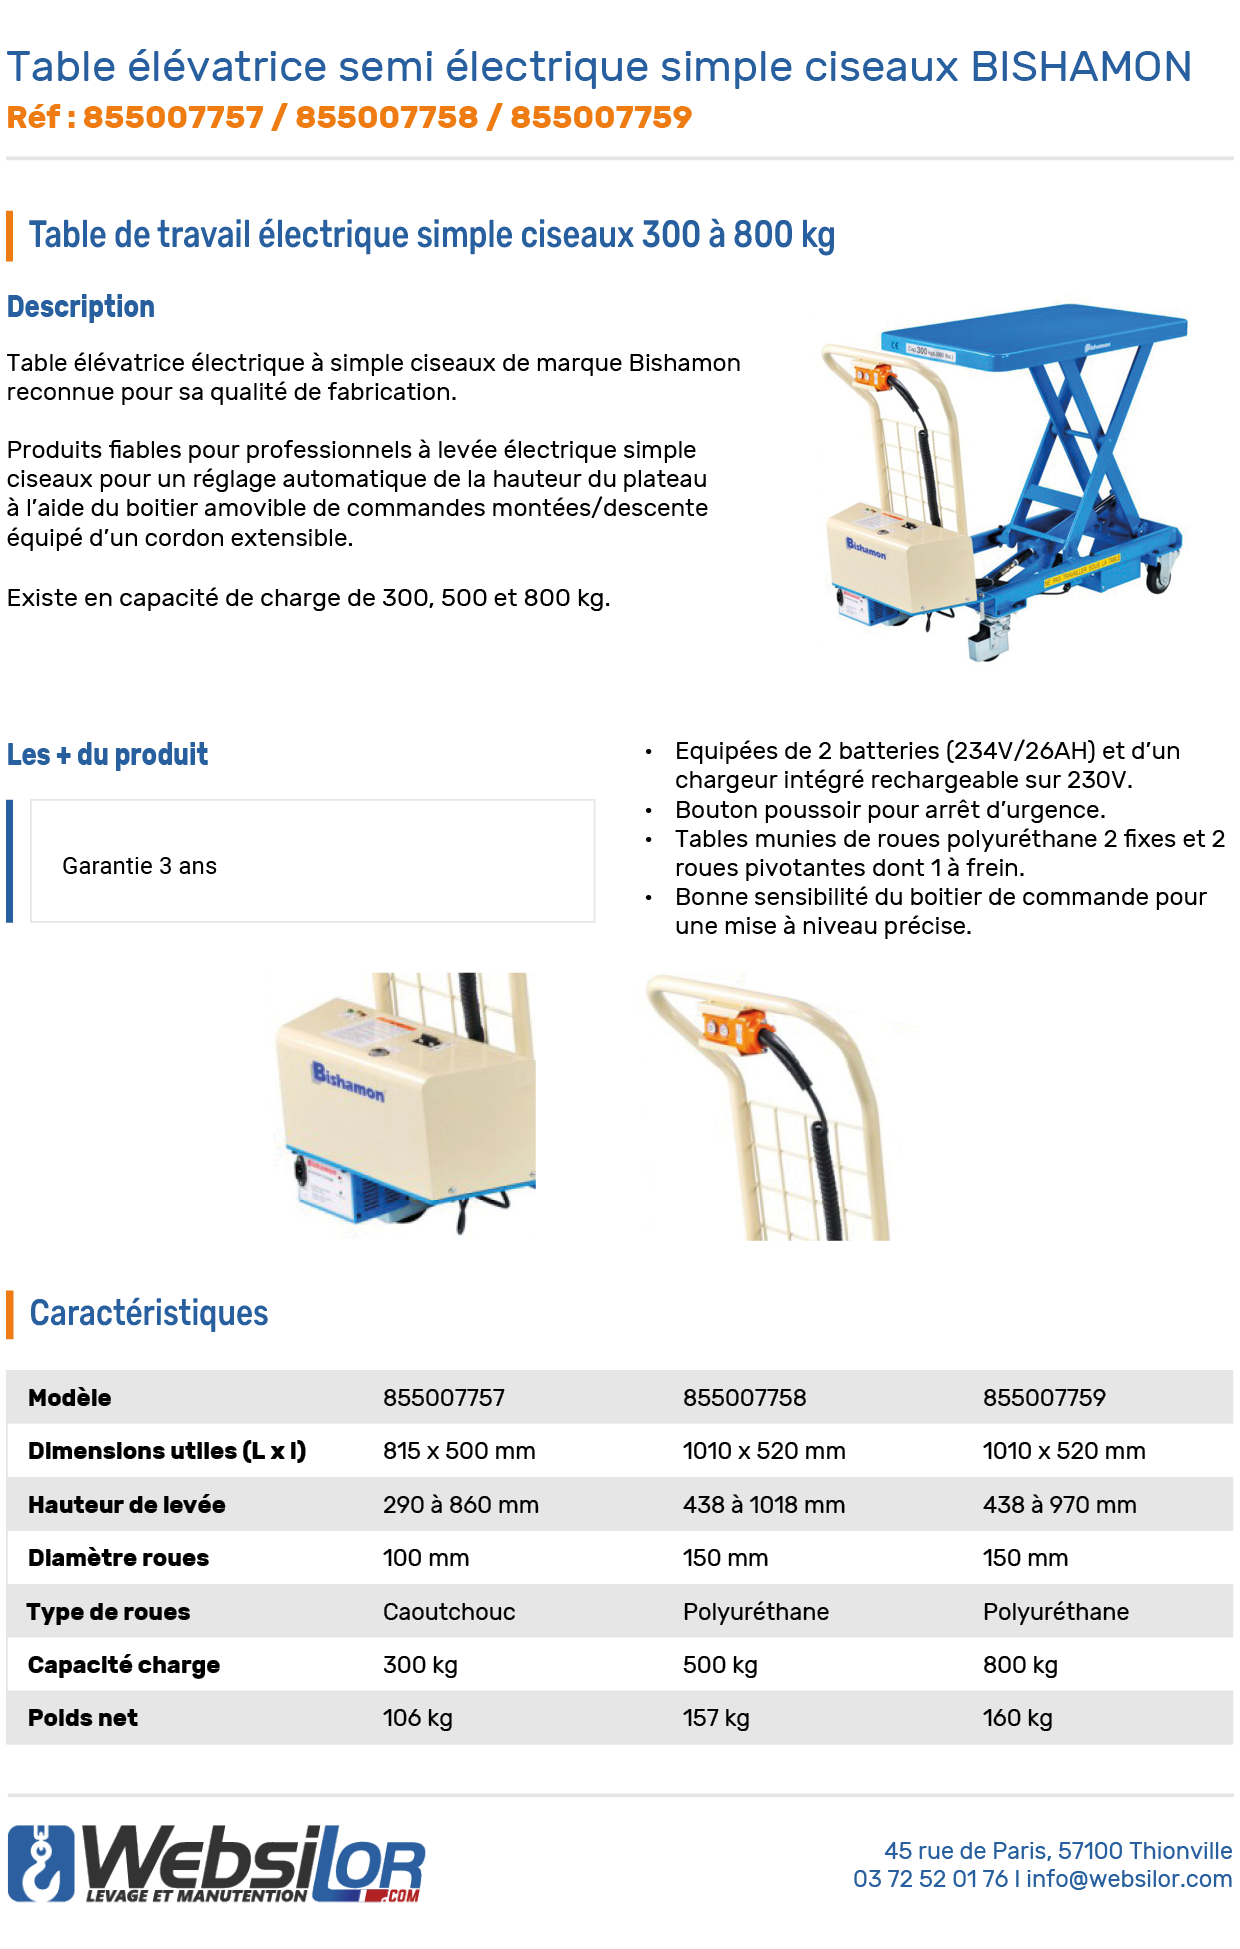 Informations techniques Table élévatrice mobile semi-électrique simple ciseaux BISHAMON 300 à 800 kg